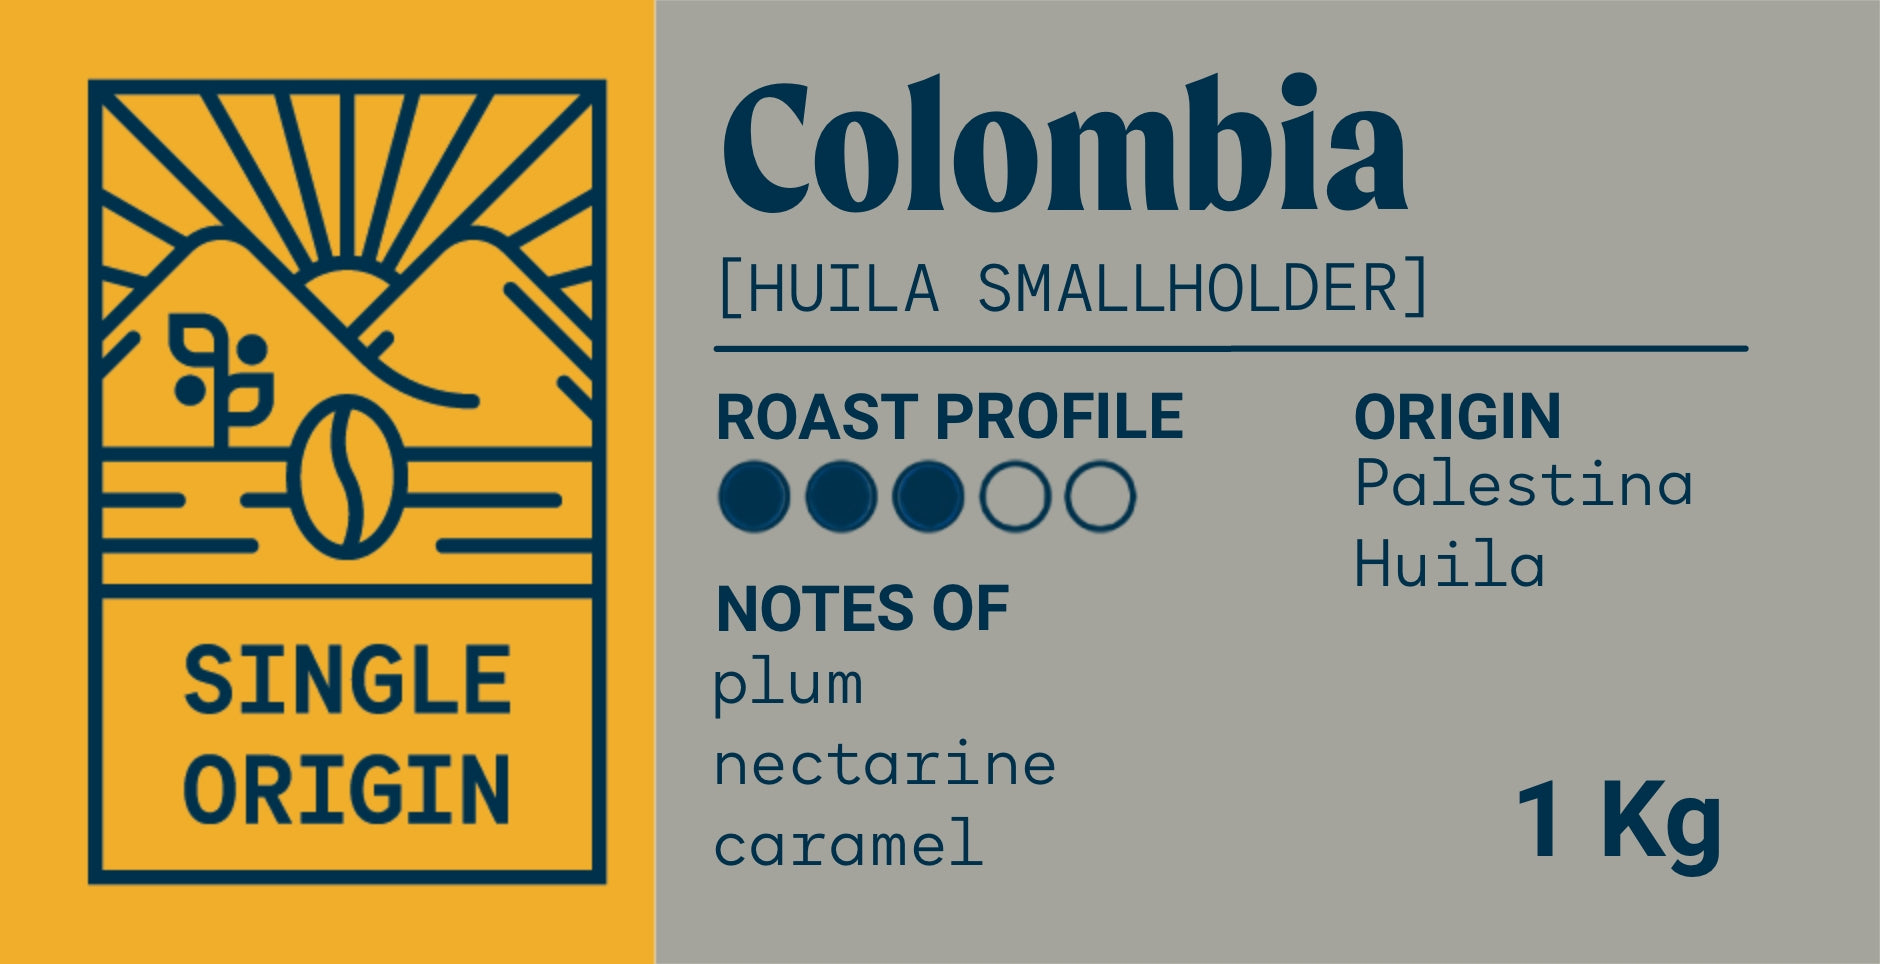 Colombia Huila Smallholder